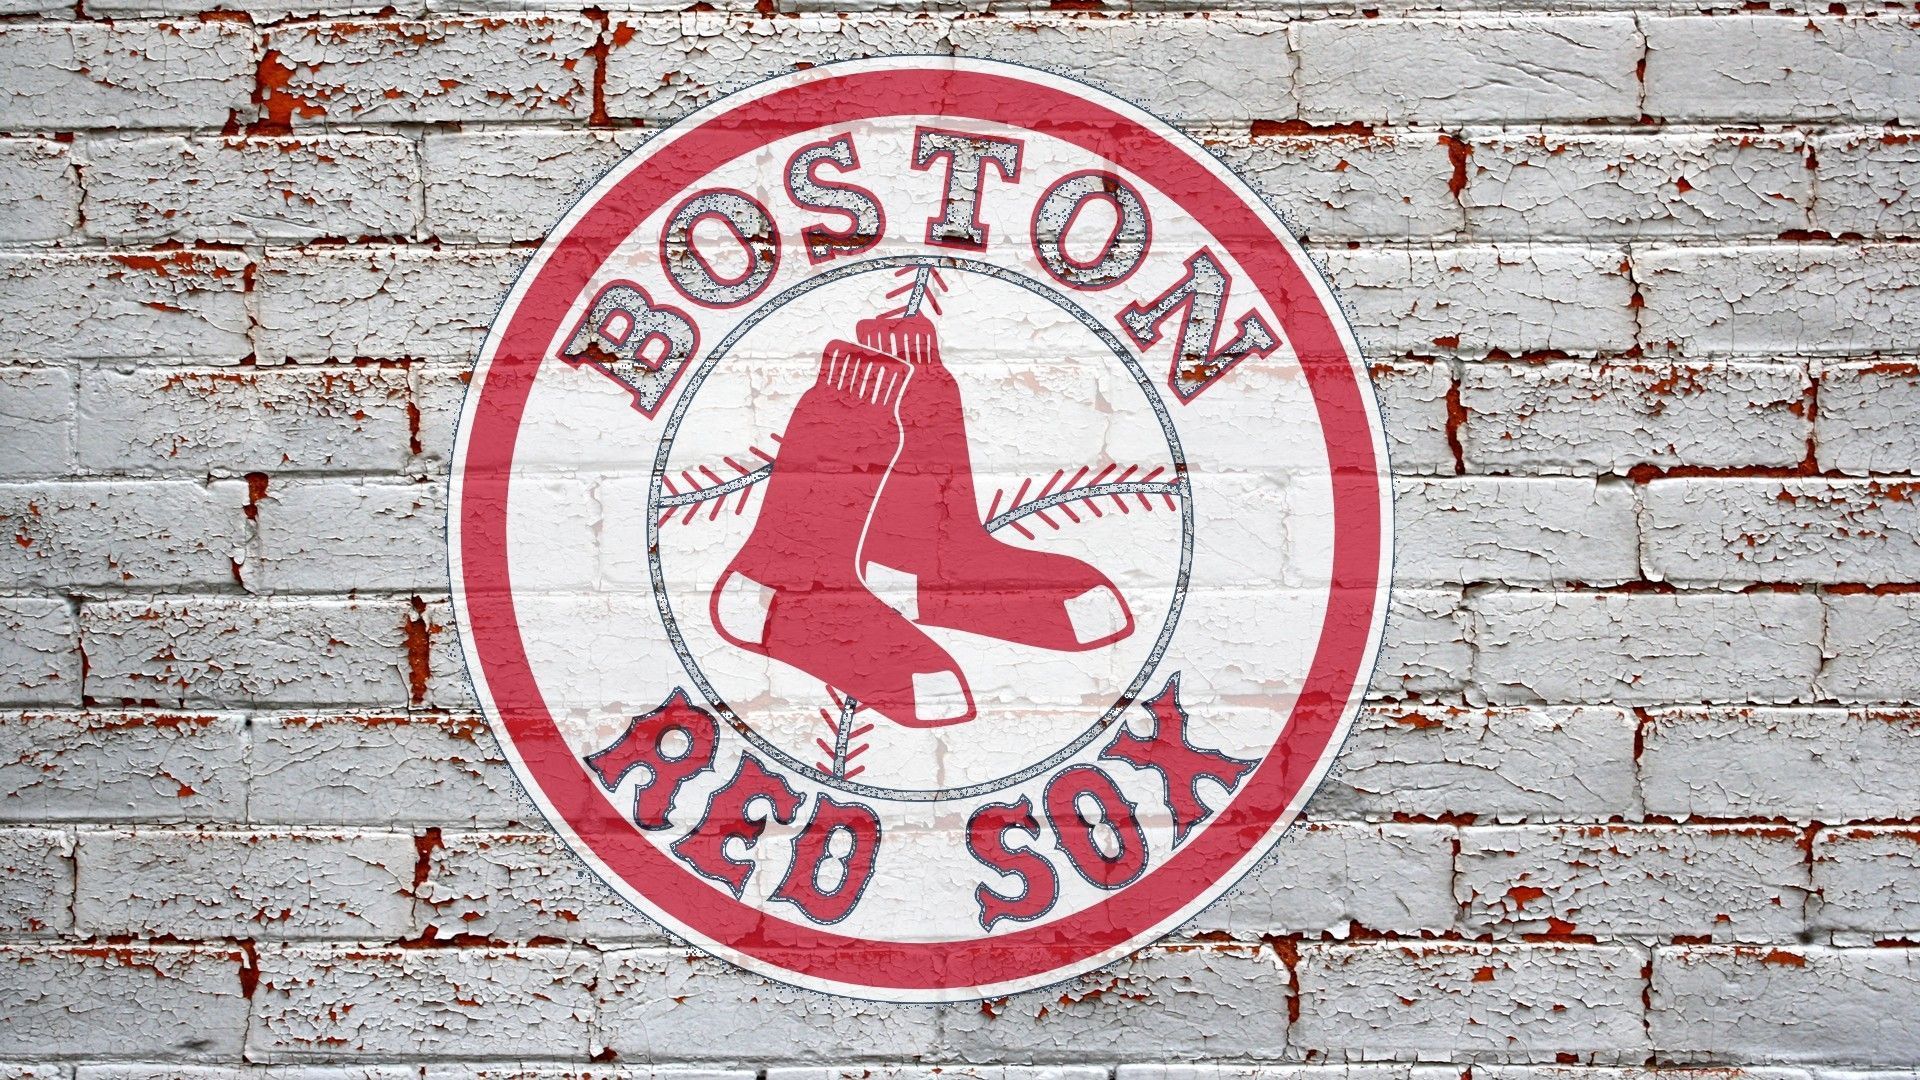 HD Boston Red Sox Logo Wallpaper